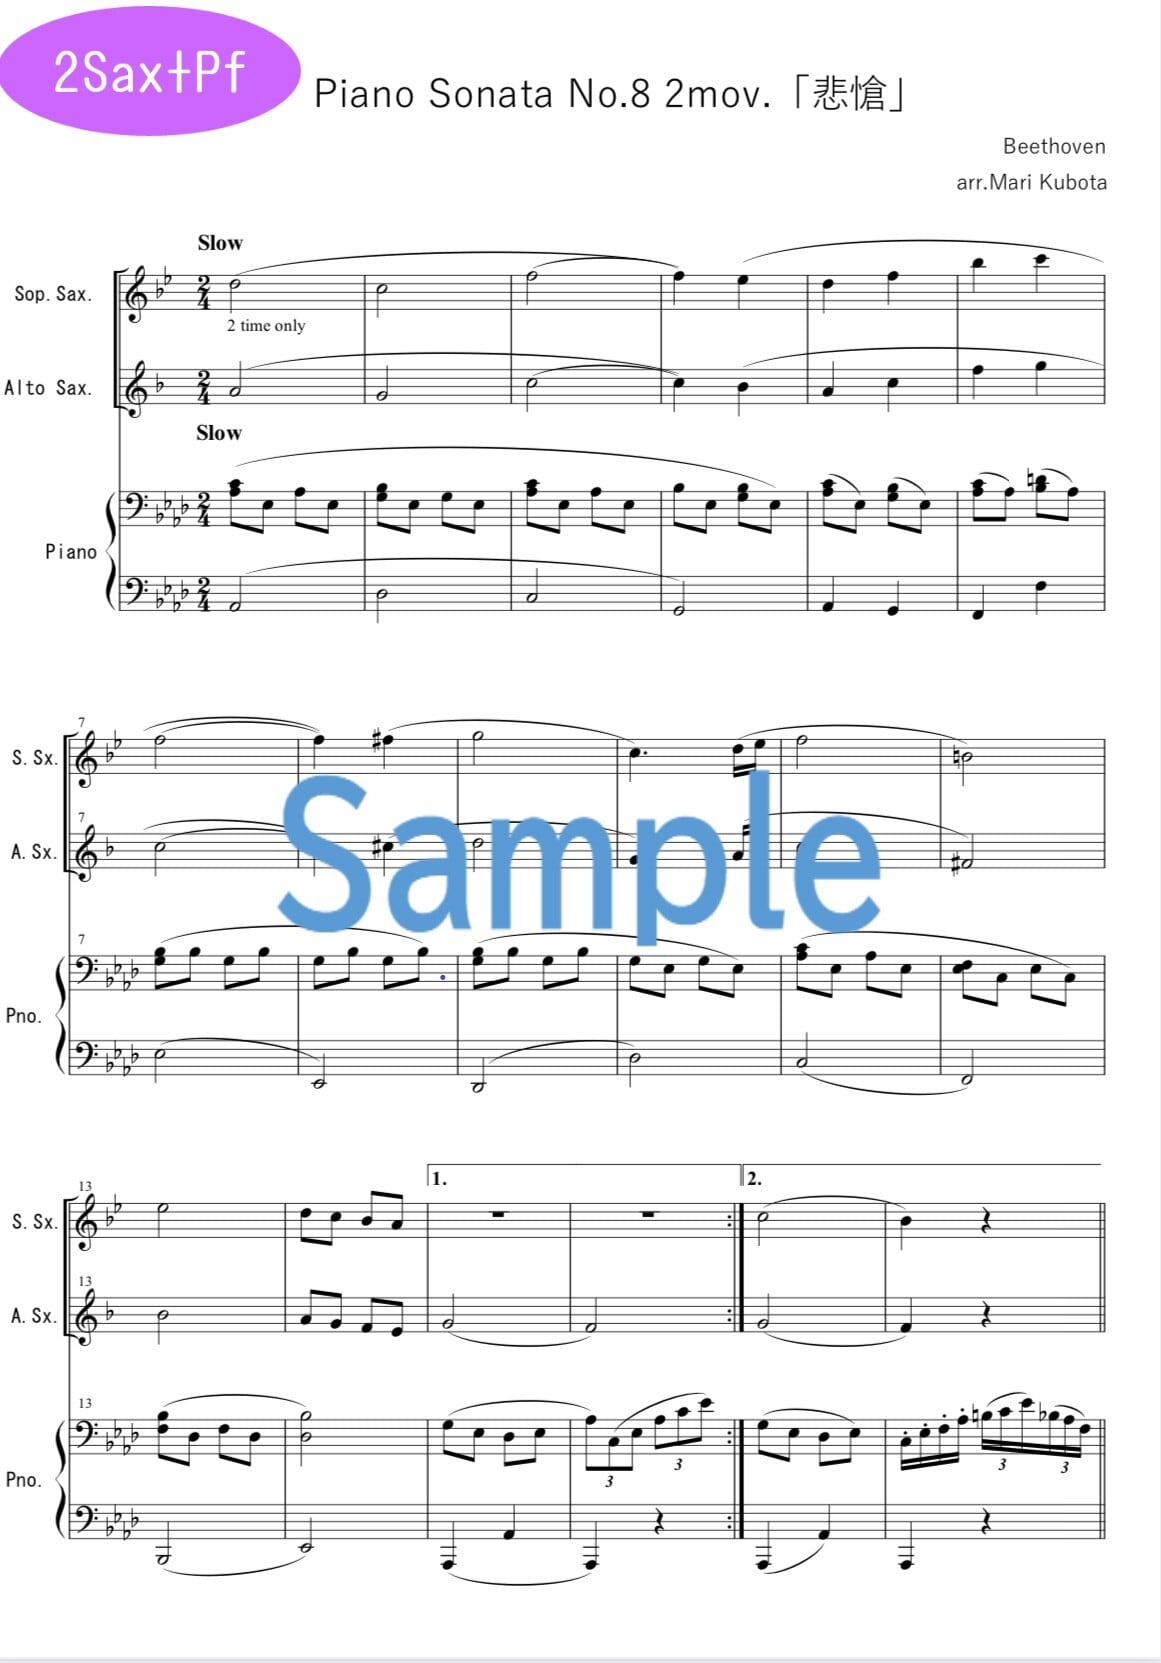 ♪　2Sax版　Notes　Beethoven　Sonata　Piano　No.8　2mov　Saxophone　ピアノソナタ「悲愴」2楽章　ベートーヴェン